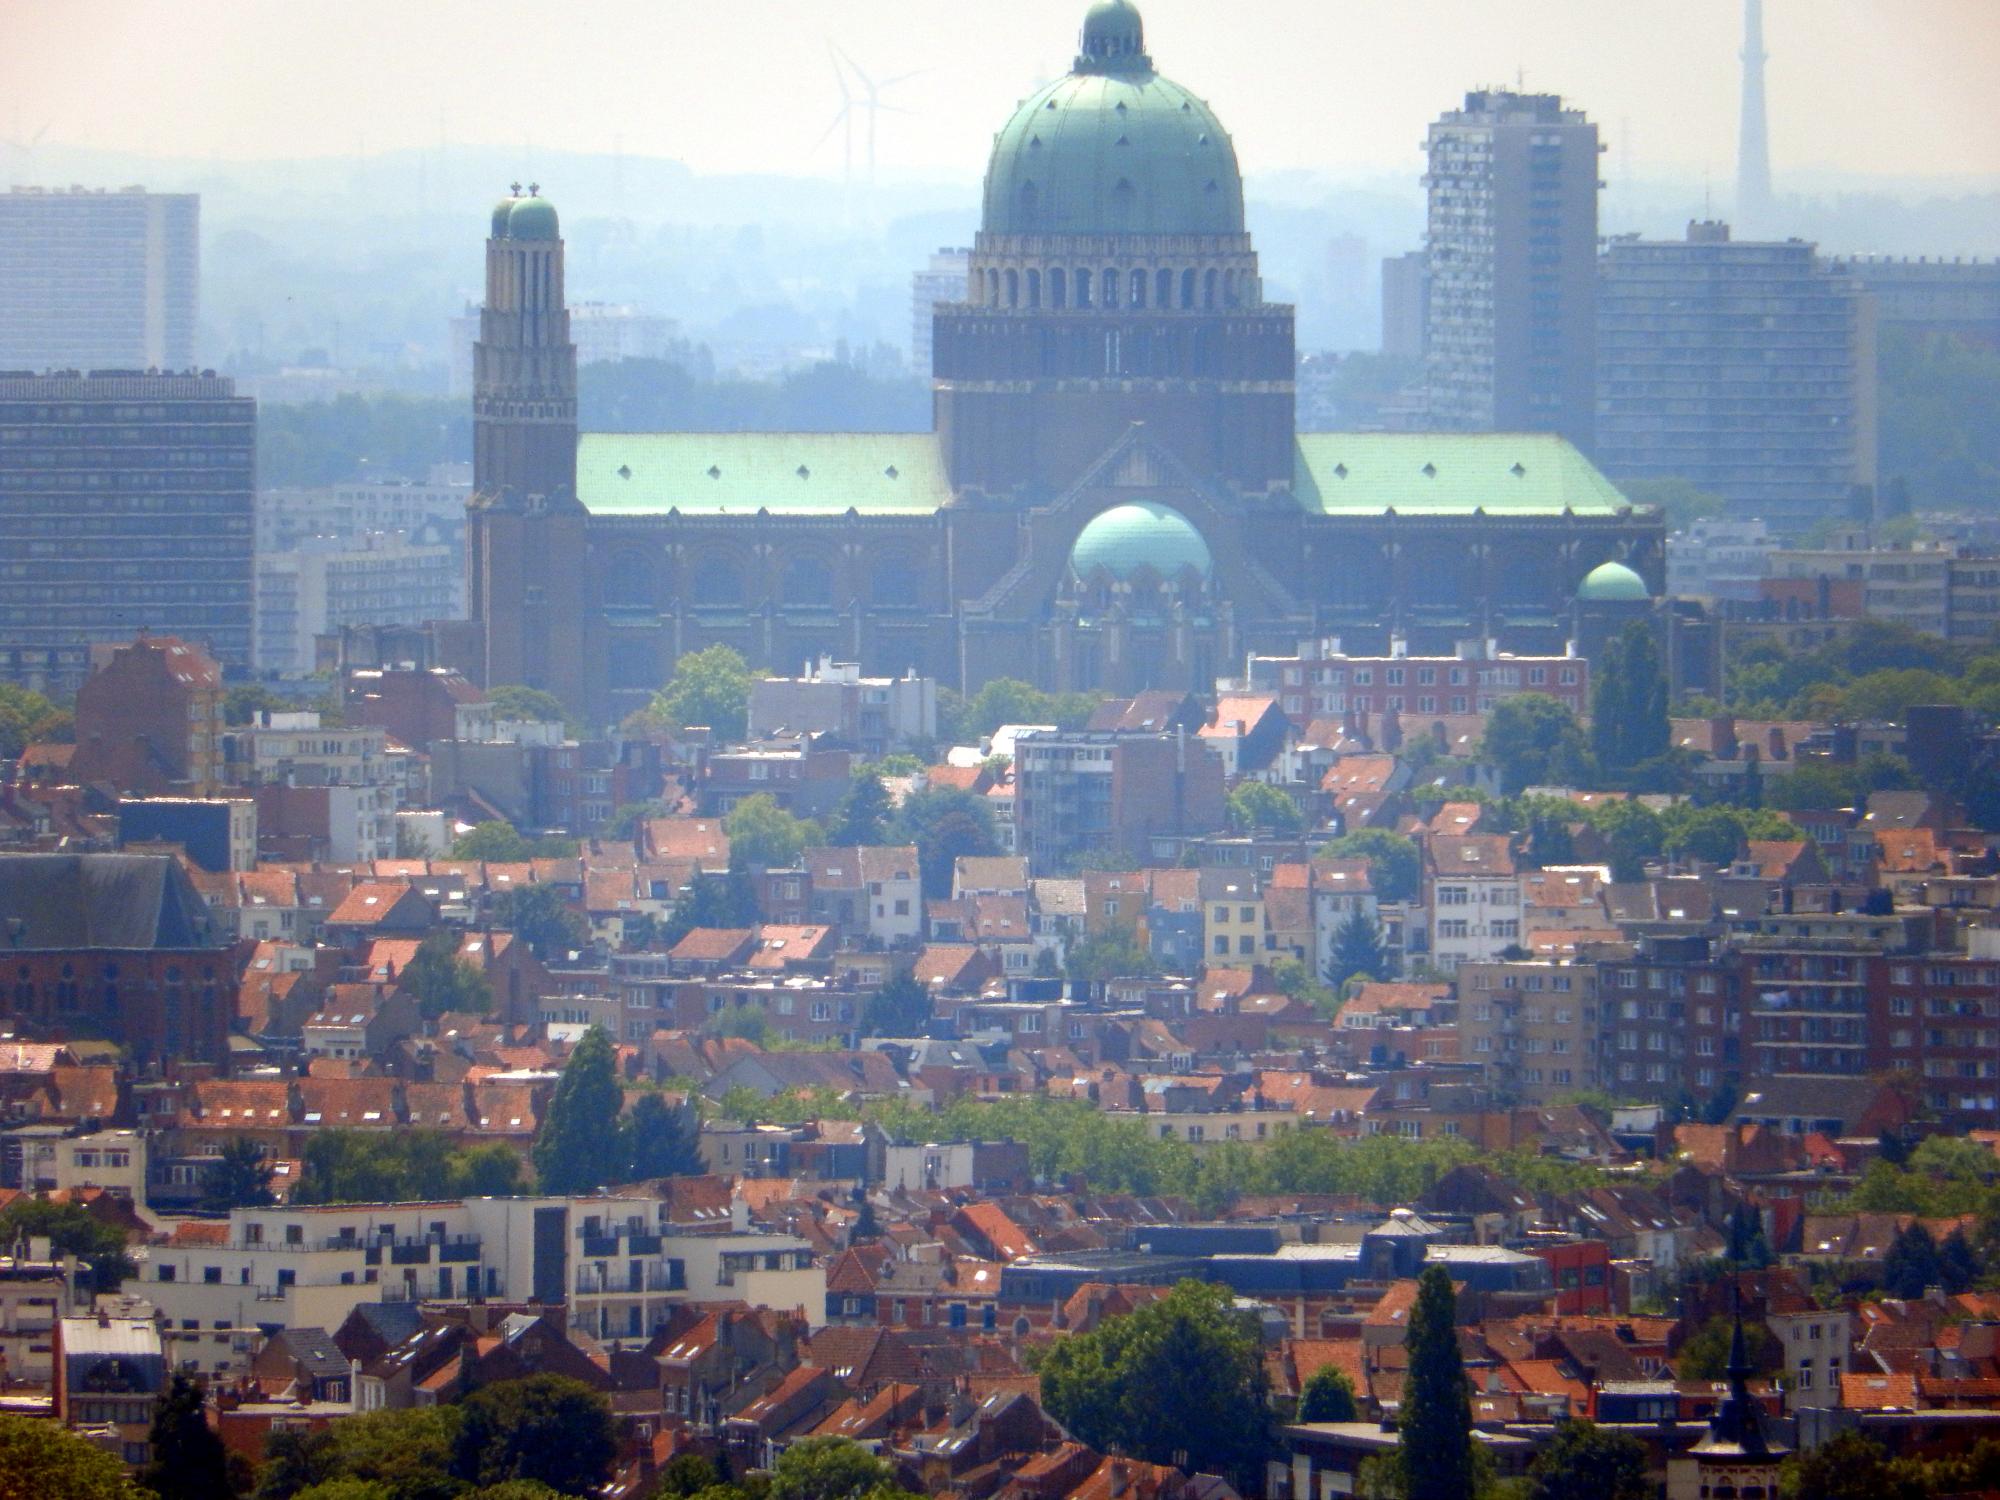 Brussels (2010-2016) - Basilica